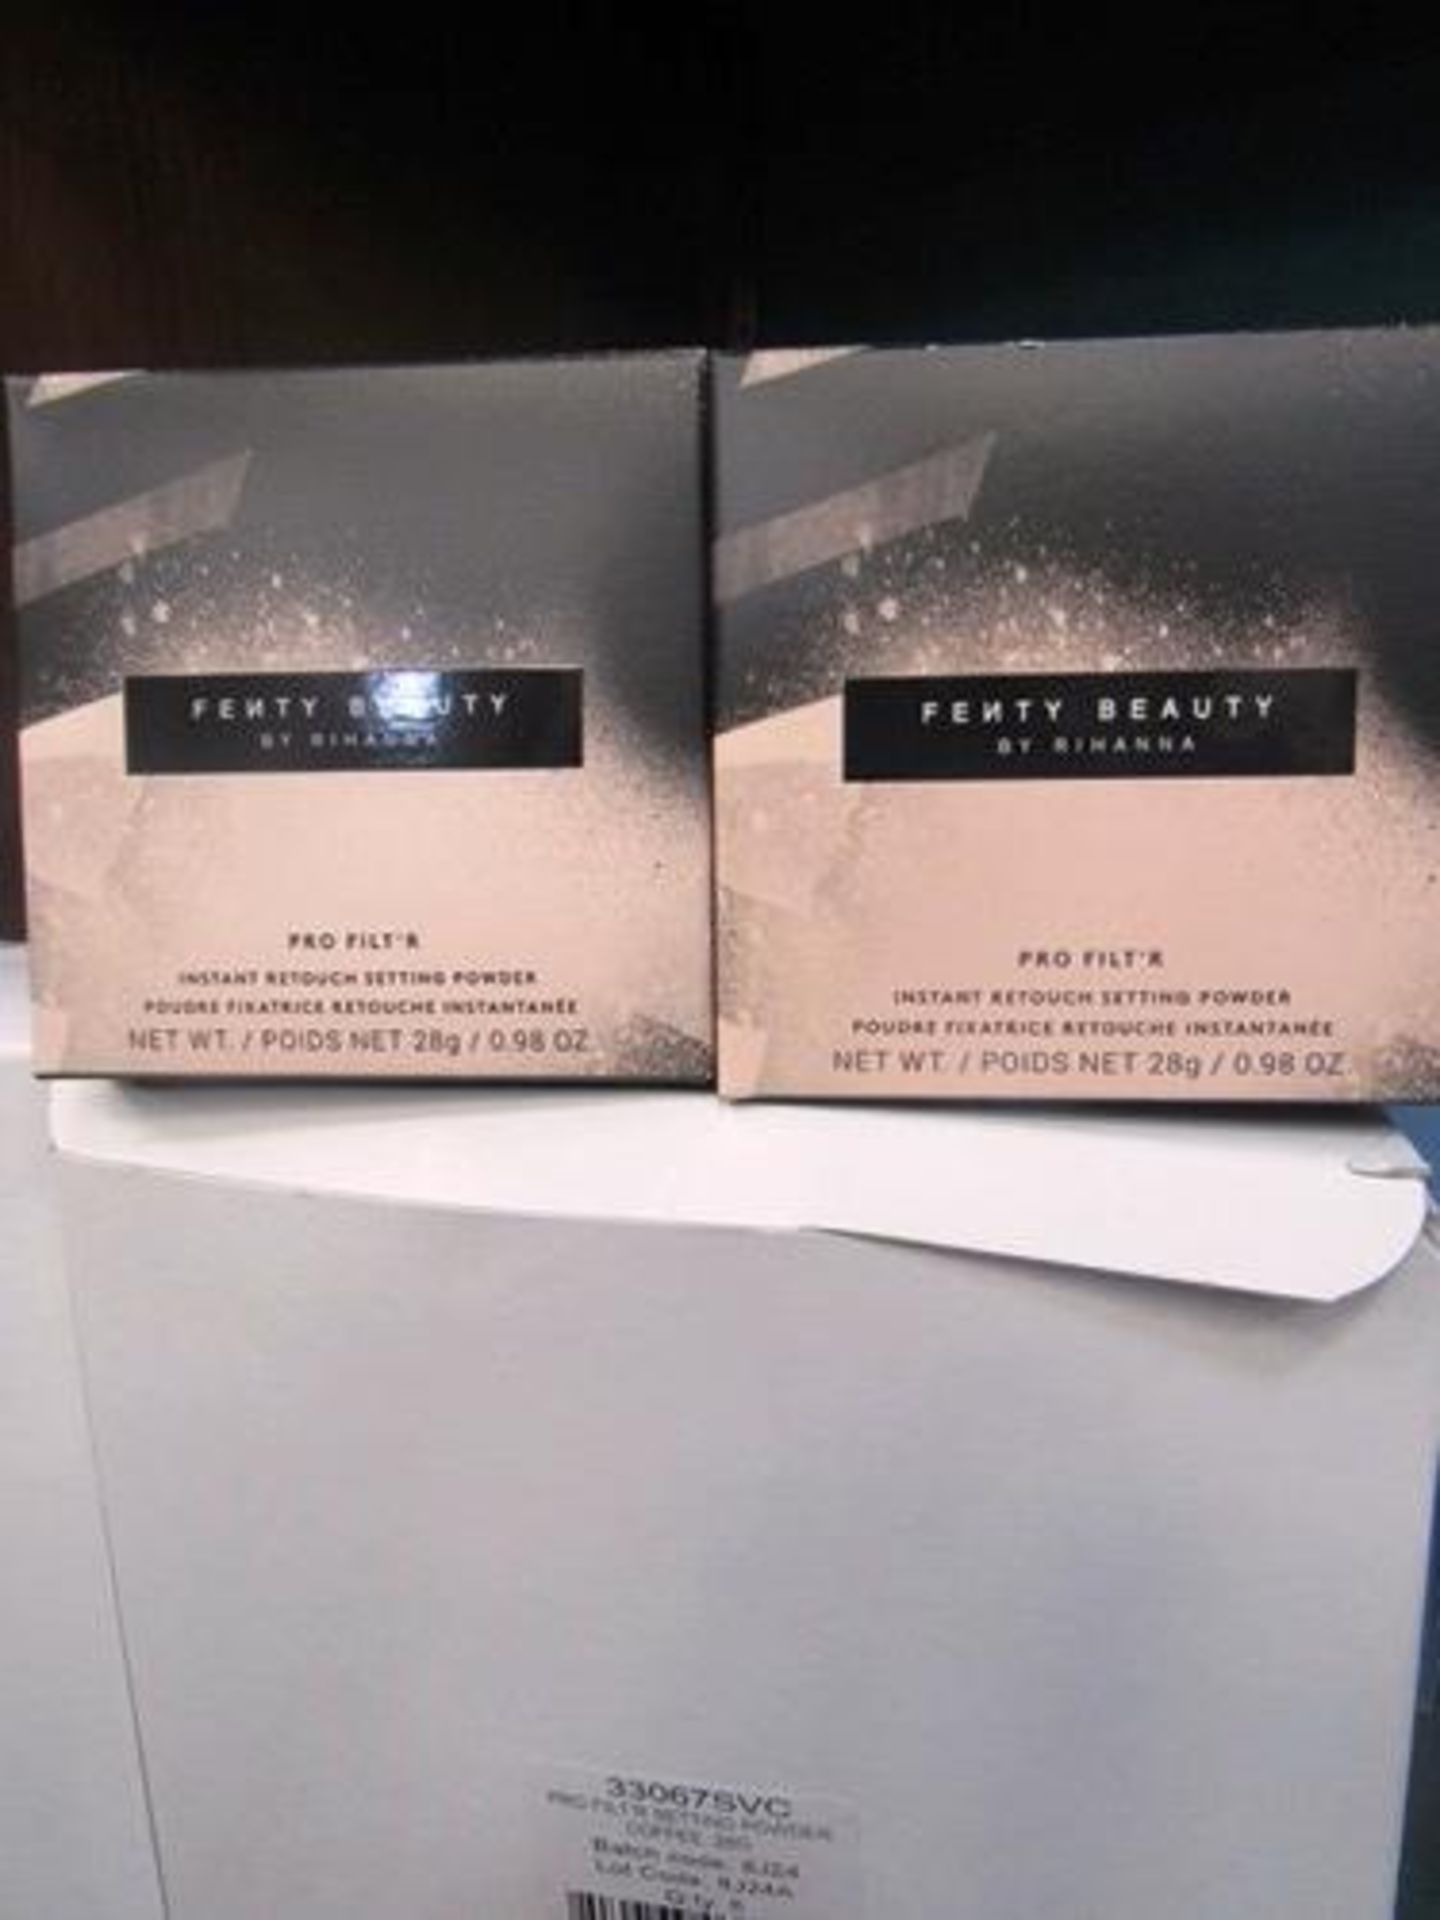 18 x 28g Fenty Beauty by Rhianna Pro Filt'r setting powder, colour coffee - New in box (C13C)